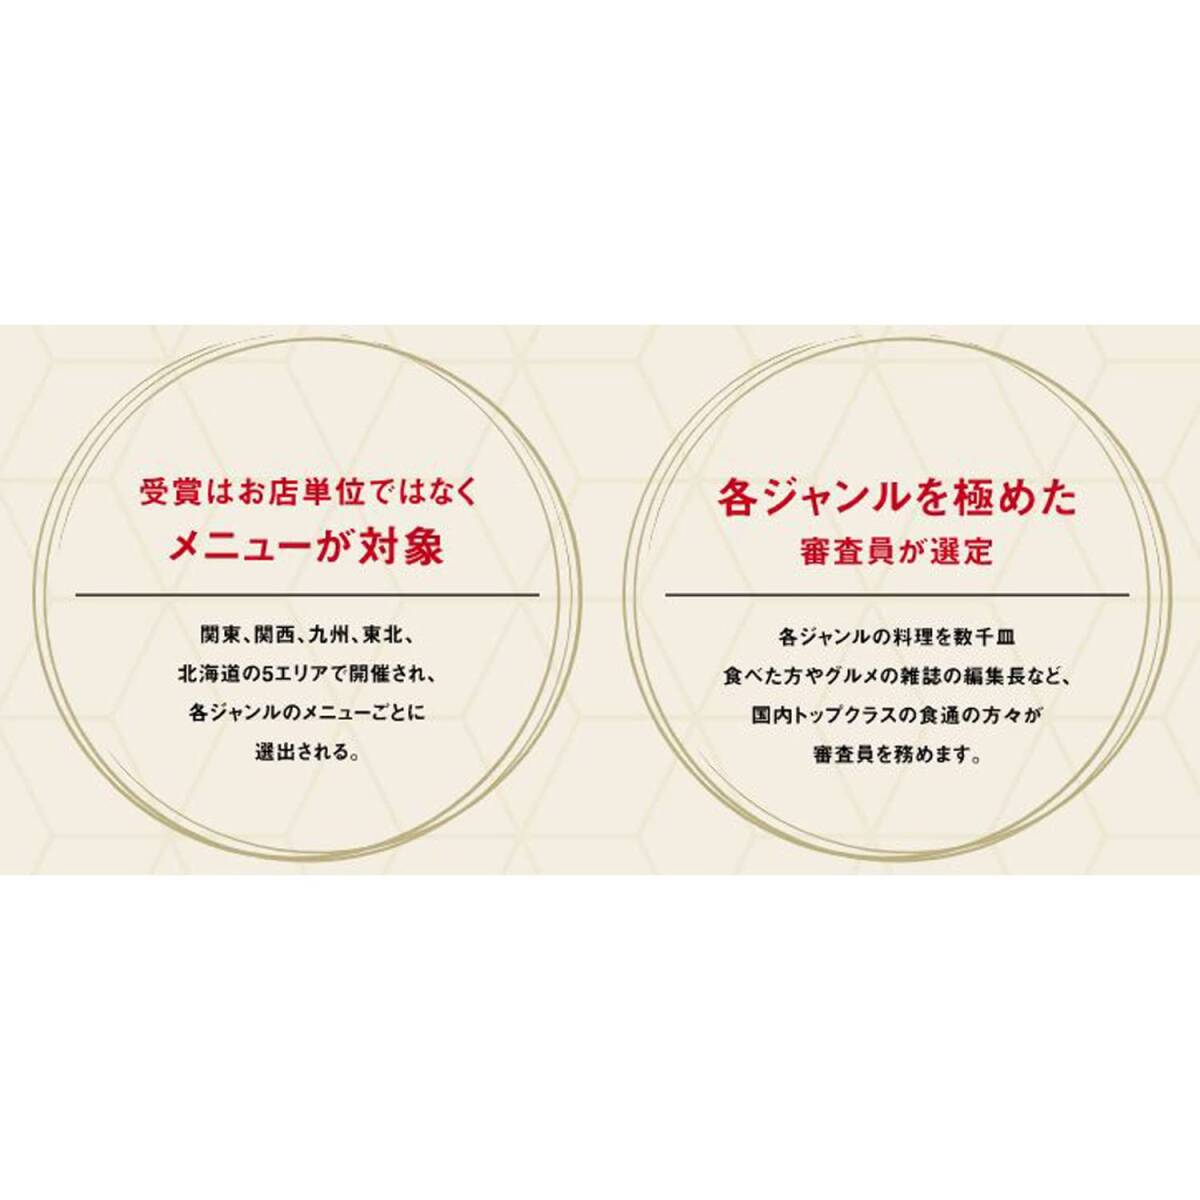 ハウス JAPAN MENU AWARD タイ風グリーンカレー 180g×5個 [レンジ化対応・レンジで簡単調理可能]_画像4